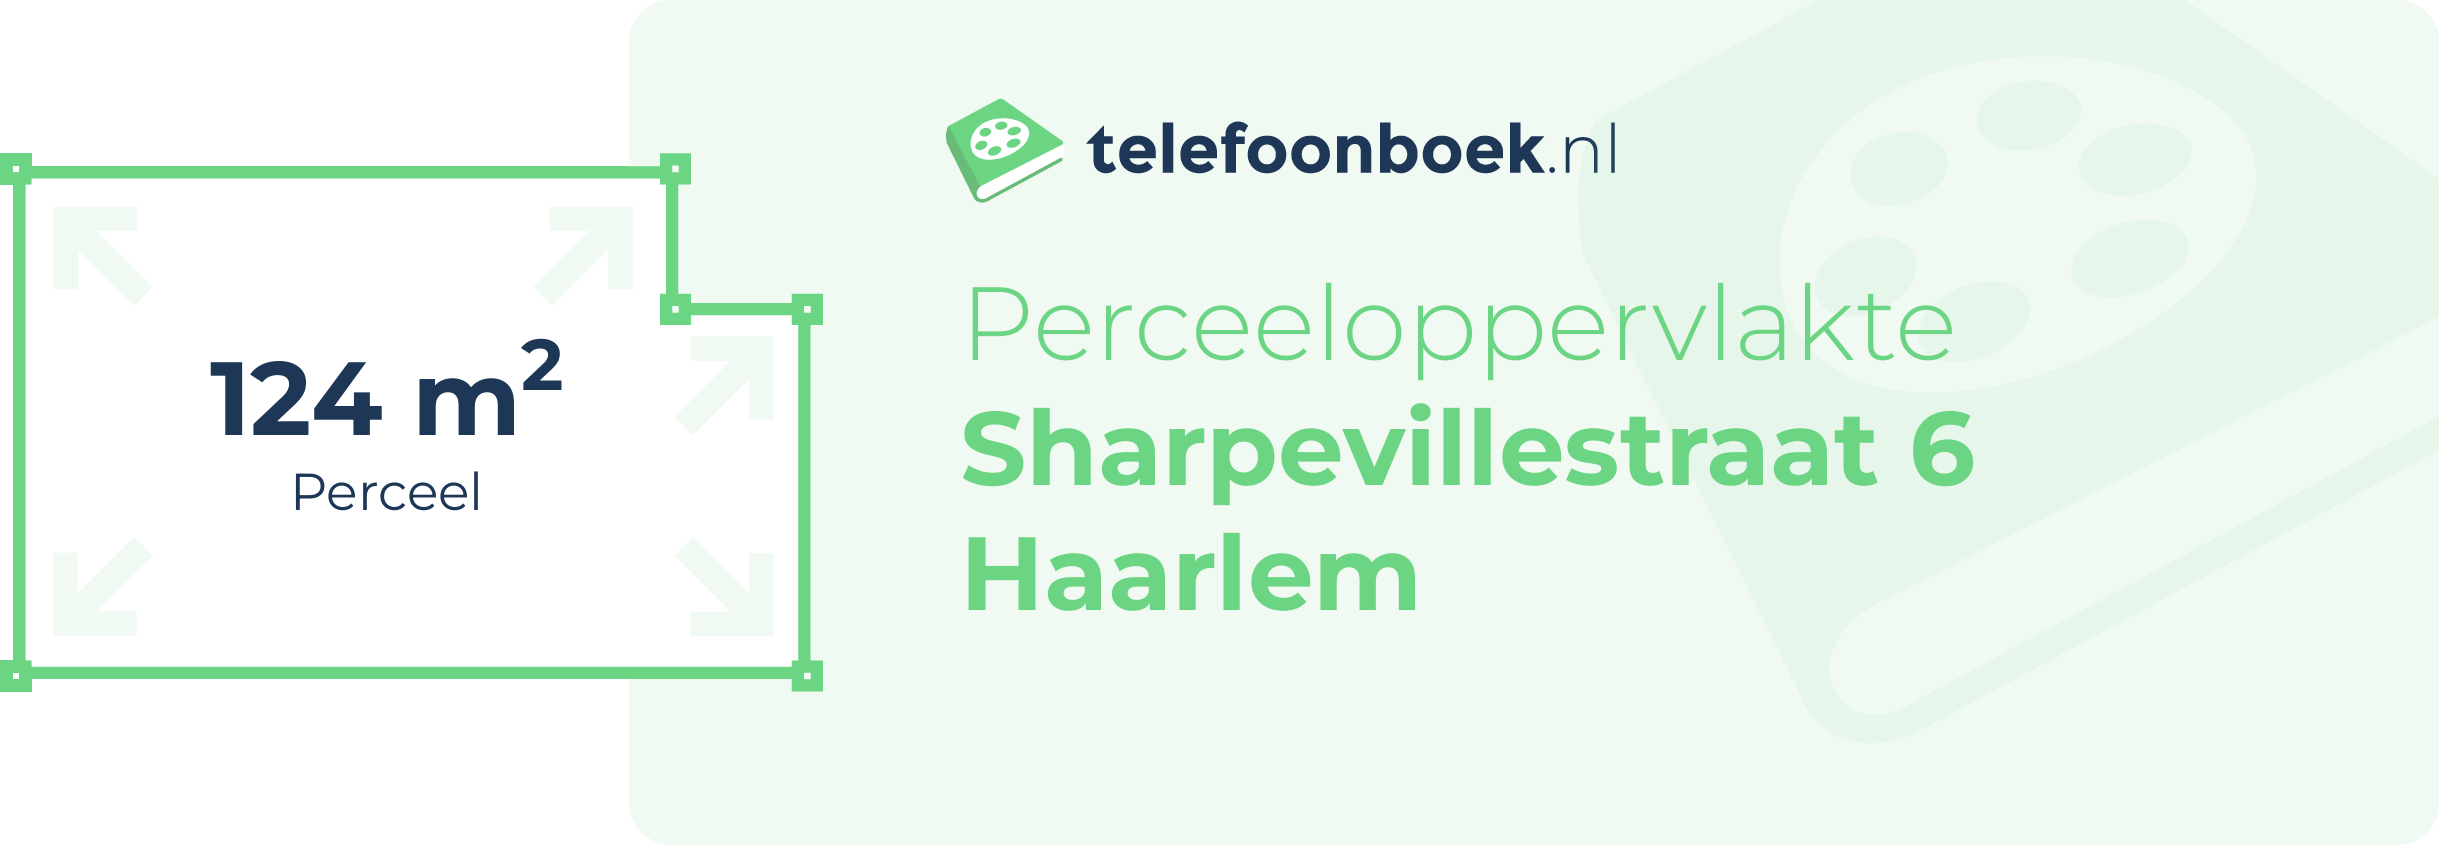 Perceeloppervlakte Sharpevillestraat 6 Haarlem